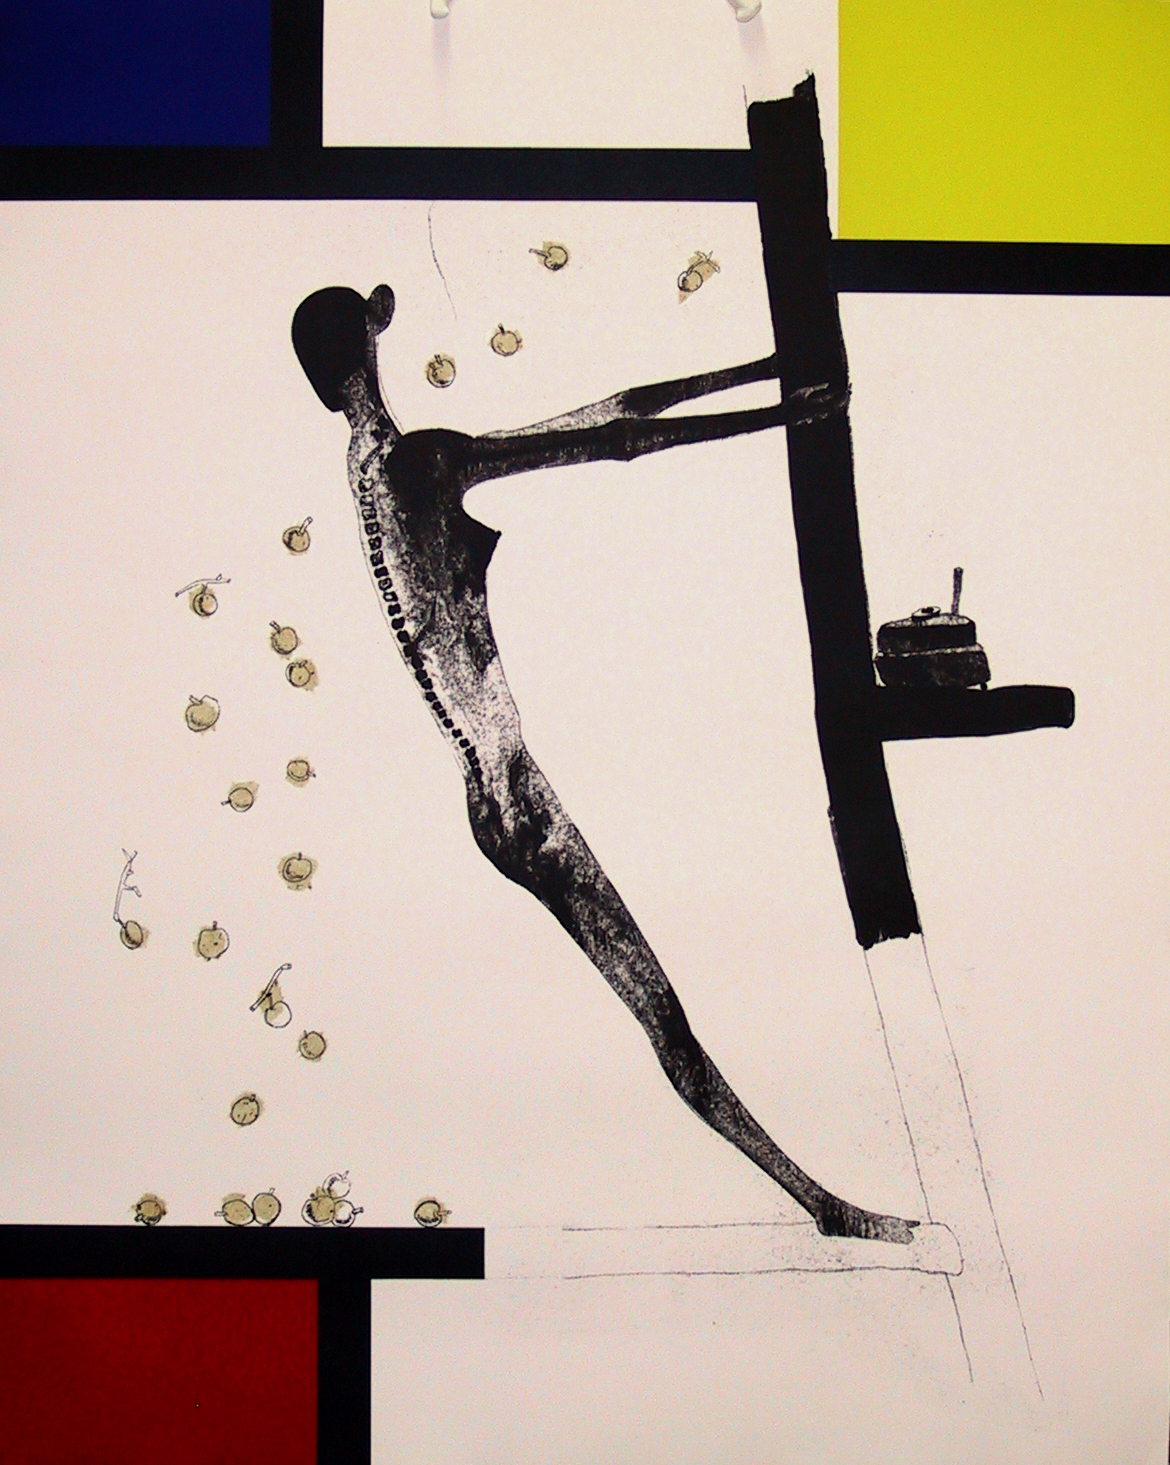 About the Artwork Atul Dodiya. Sabari Shaking Mondrian. 2005  by Atul Dodiya